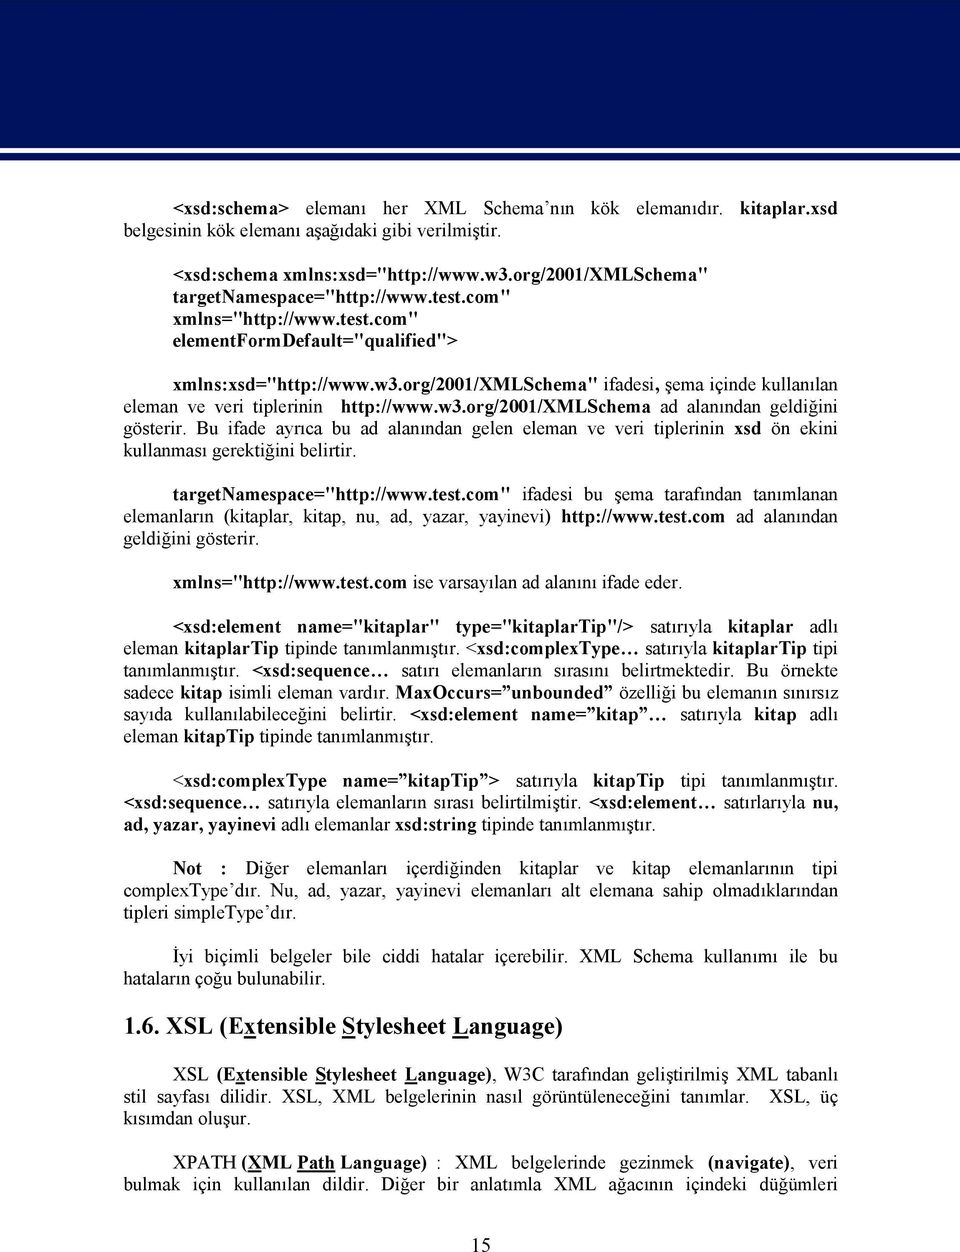 org/2001/xmlschema" ifadesi, şema içinde kullanılan eleman ve veri tiplerinin http://www.w3.org/2001/xmlschema ad alanından geldiğini gösterir.